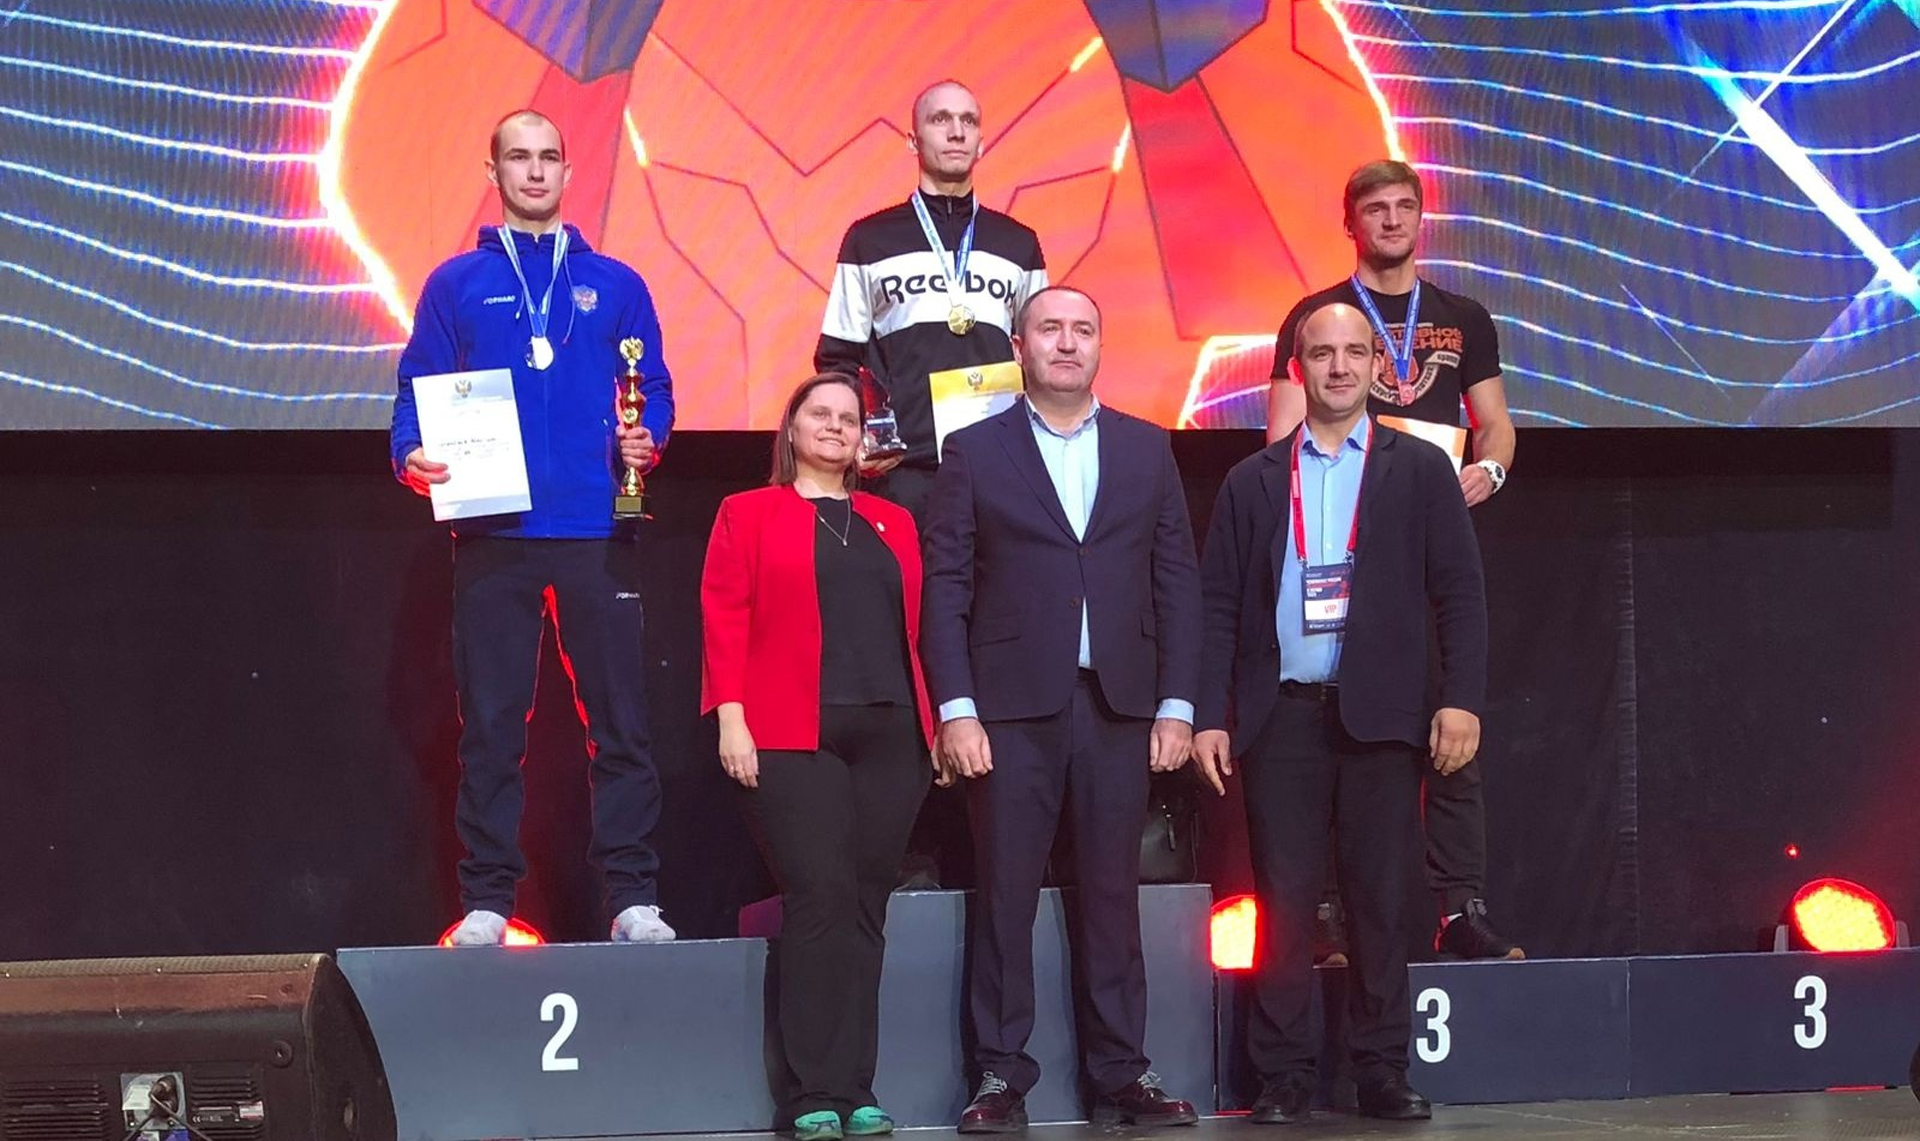 Южноуральцы завоевали 7 медалей на Всероссийском чемпионате по кикбоксингу